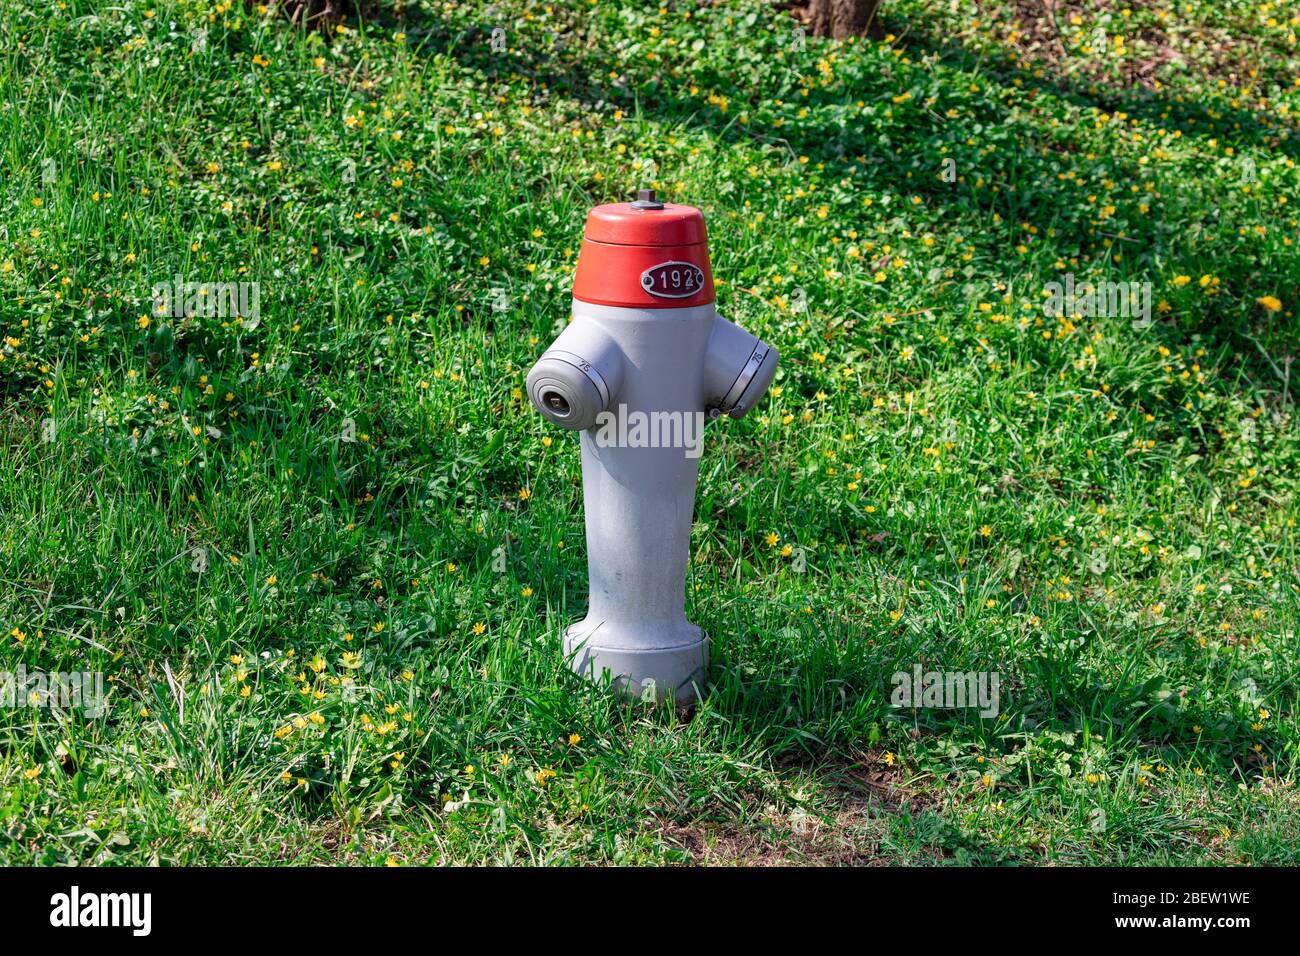 un solo idrante rosso fuoco argento con numero 192 su un prato verde primavera e fiori gialli, di giorno Foto Stock